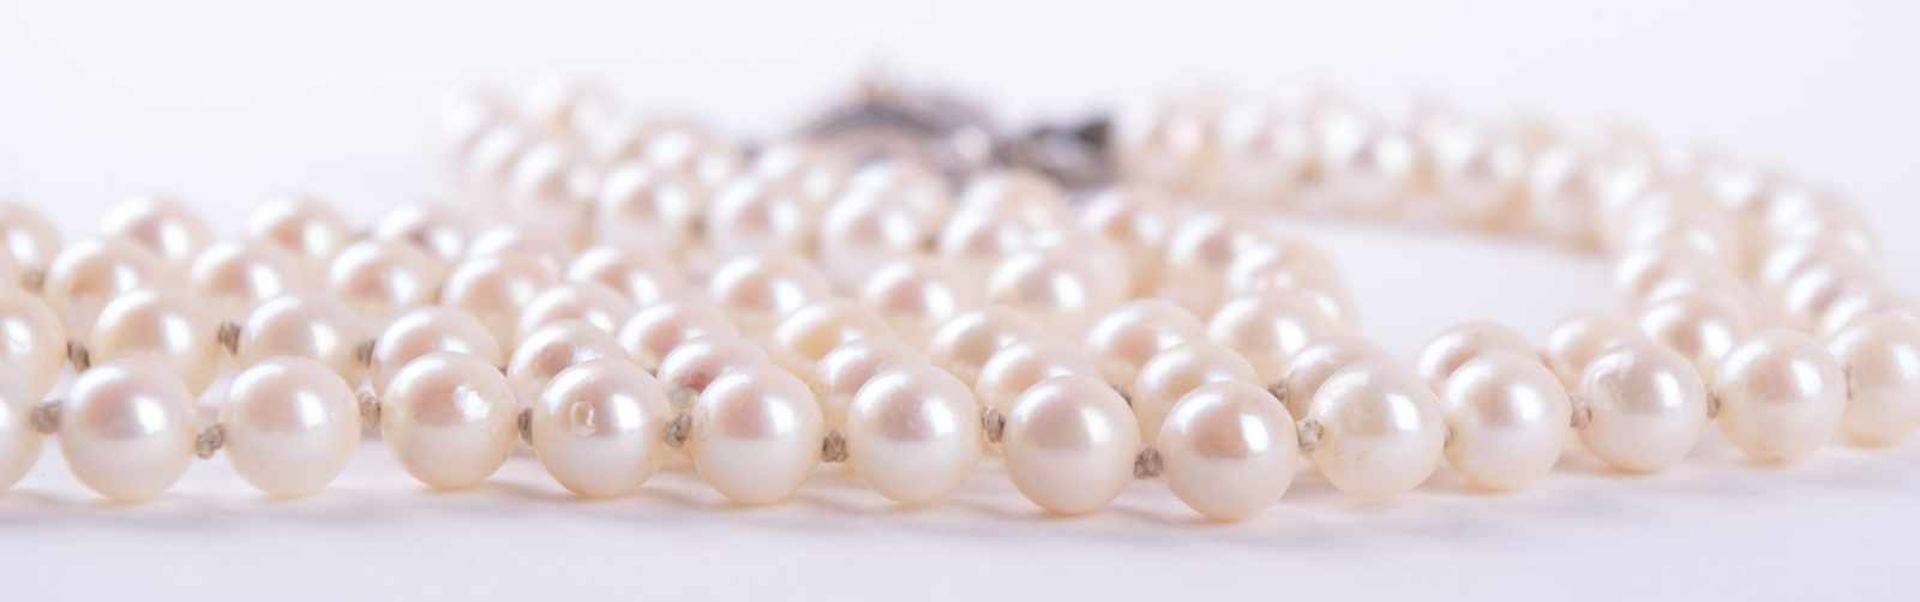 Perlenkette um 1930 Verschluss WG/GG 333/000 mit kleiner Perle besetzt, L: 47 cm Pearl necklace - Image 2 of 4